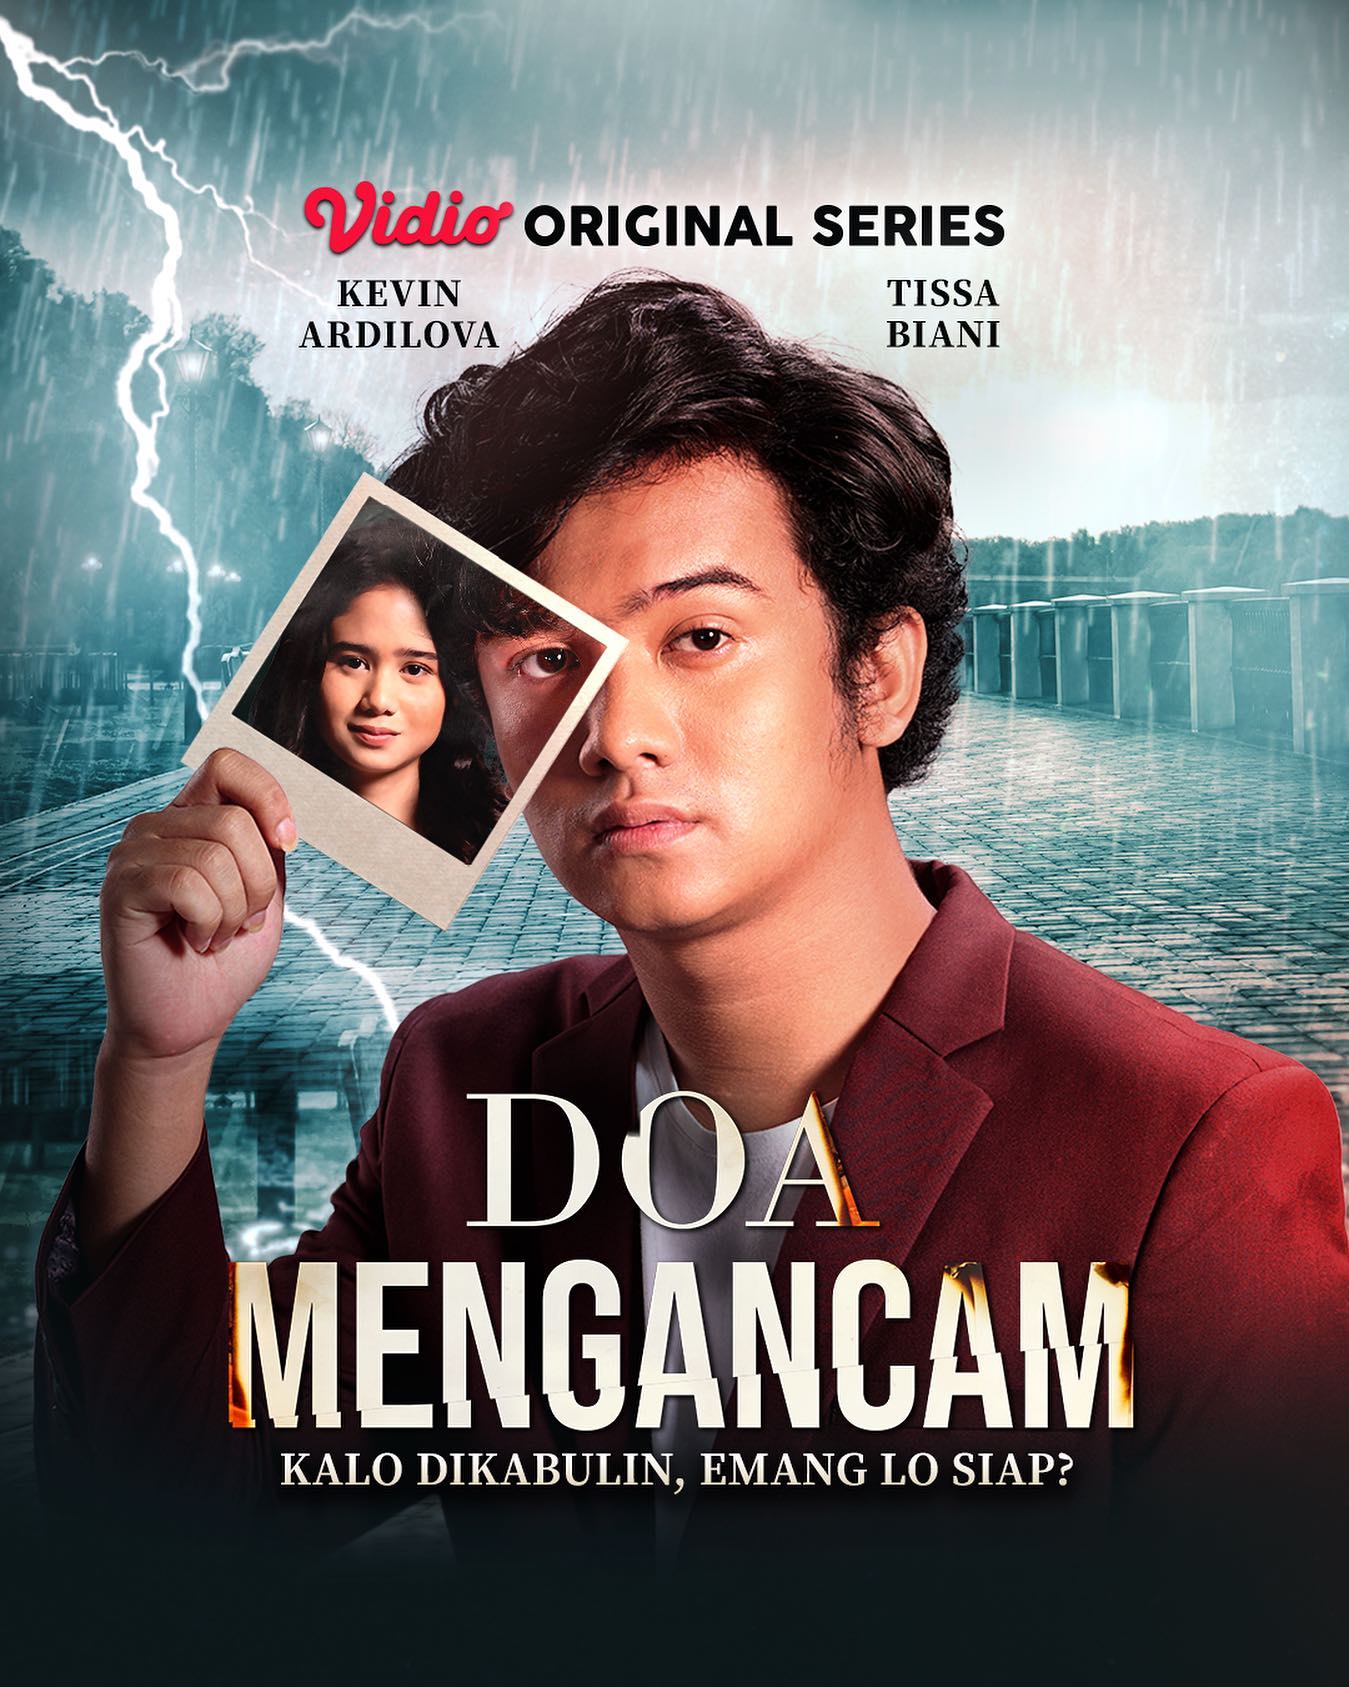 TV ratings for Doa Mengancam in Filipinas. Vidio TV series